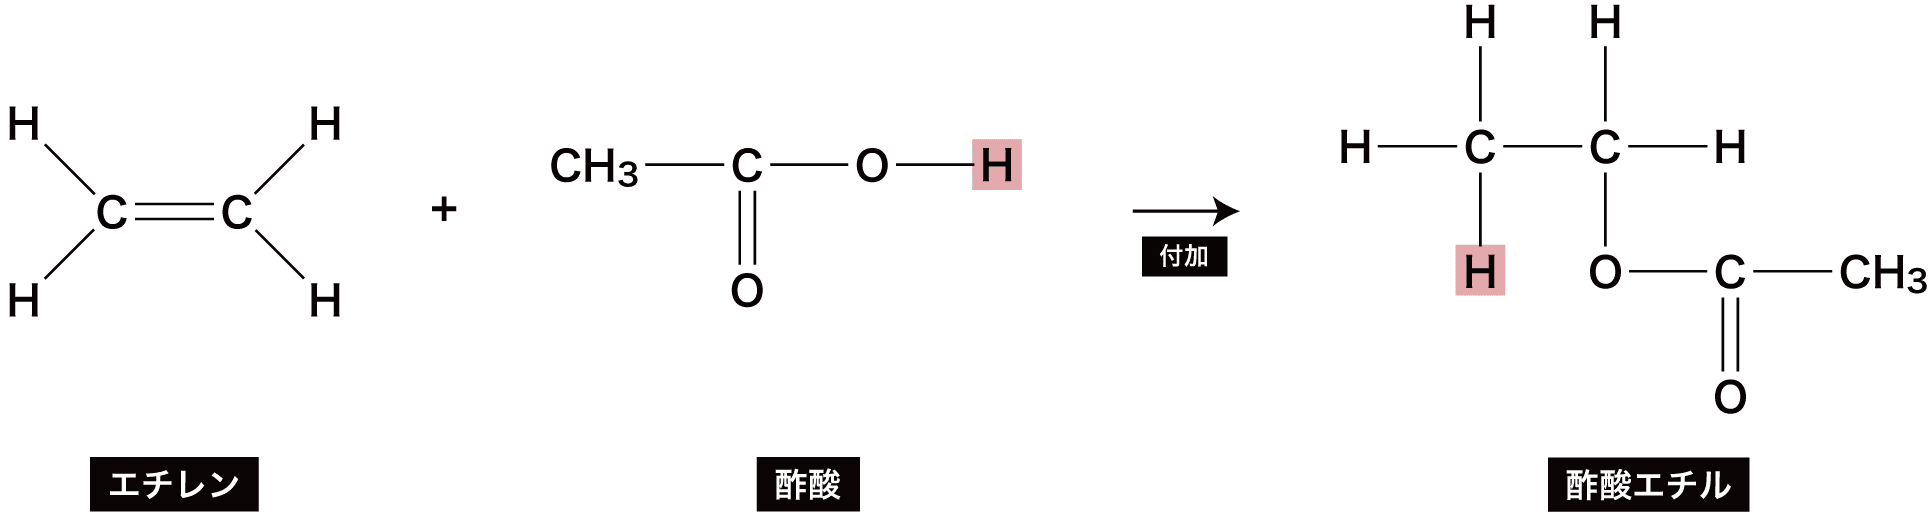 カルボン酸 エステル 一覧 構造 命名法 製法 反応 性質など 化学のグルメ